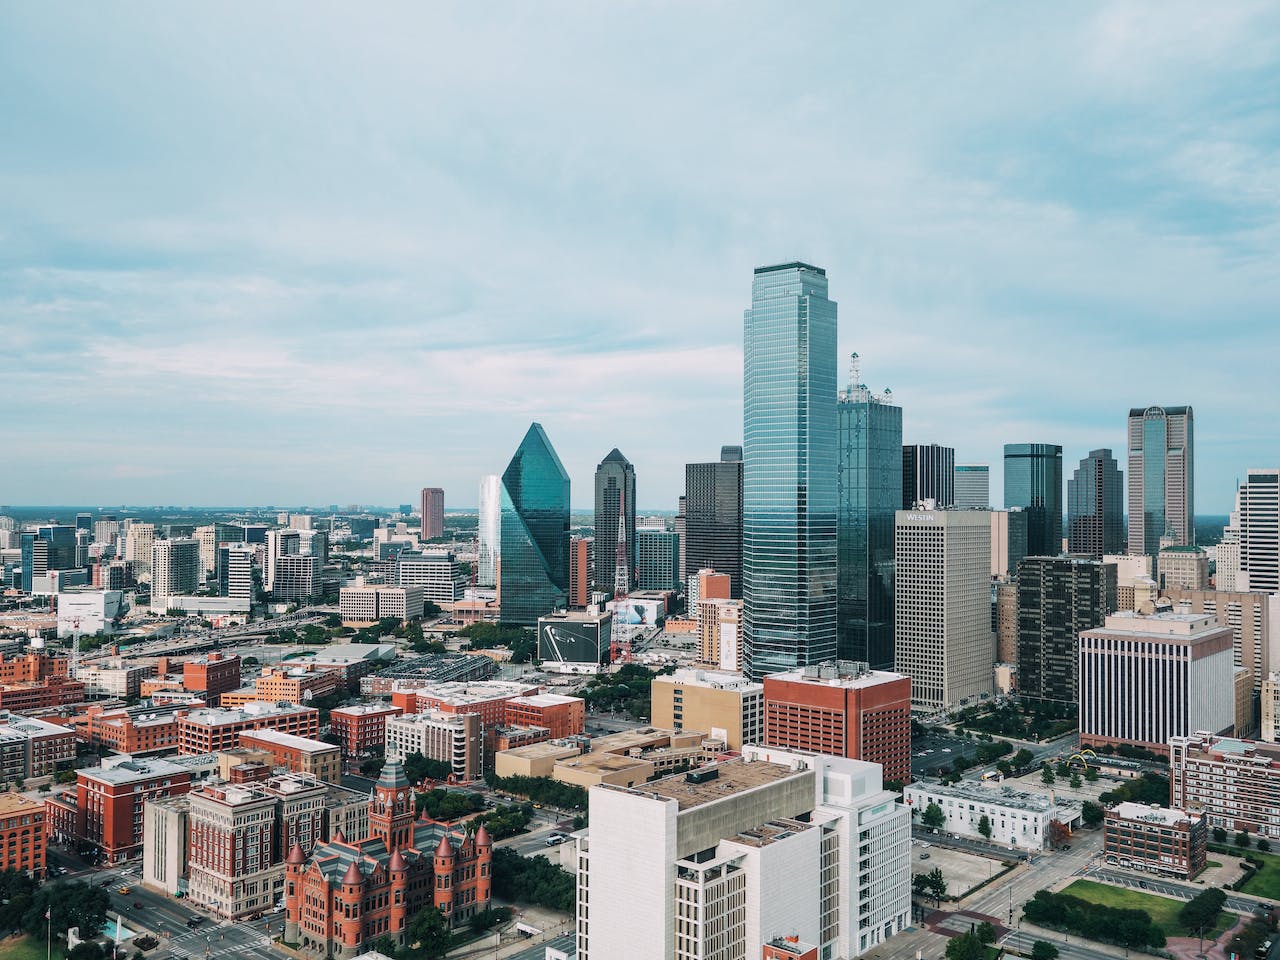 The view of Dallas